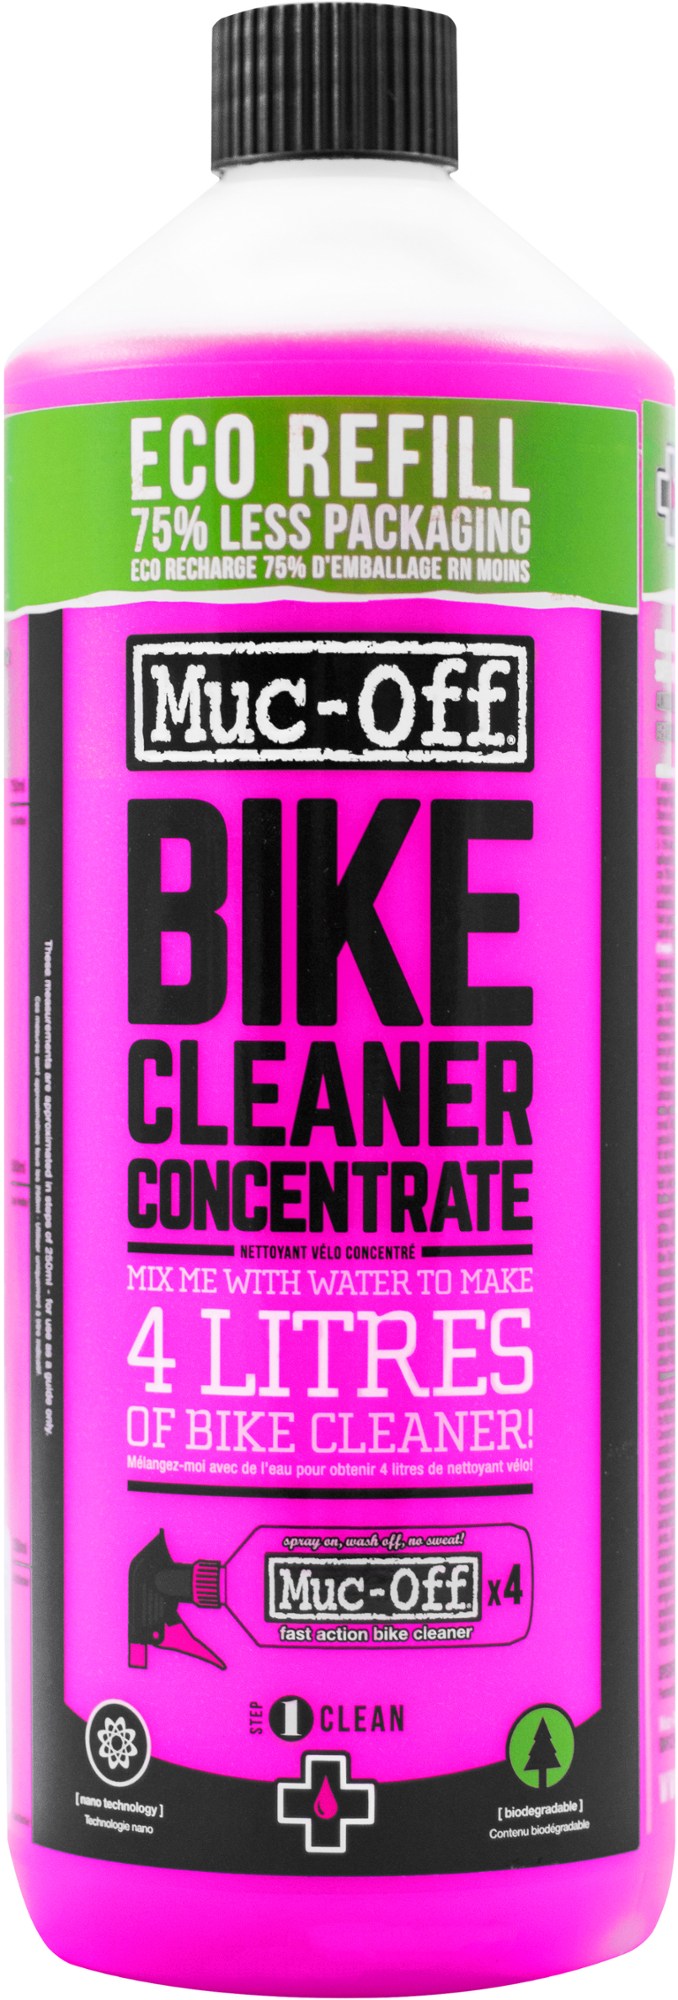 Концентрат для чистки велосипедов Muc-Off цена и фото